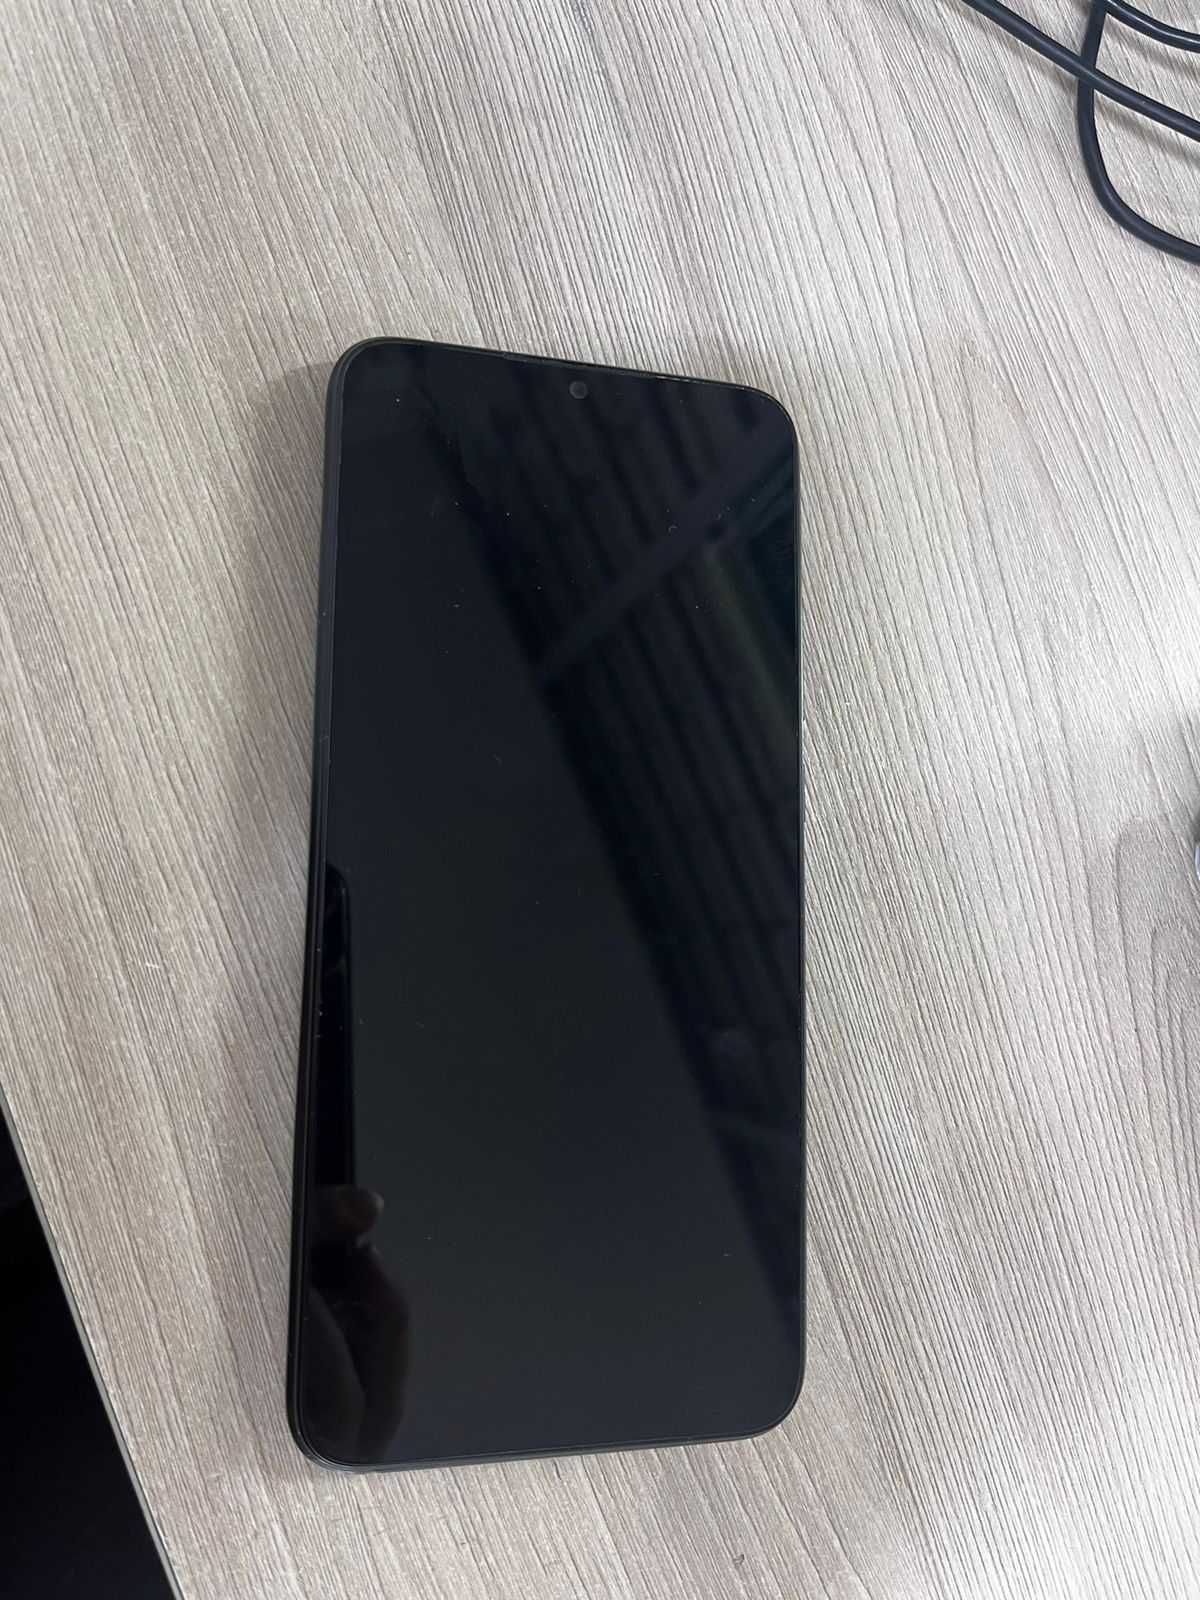 Смартфон Xiaomi Redmi 9A(Б. Момышулы)номер лота 373277